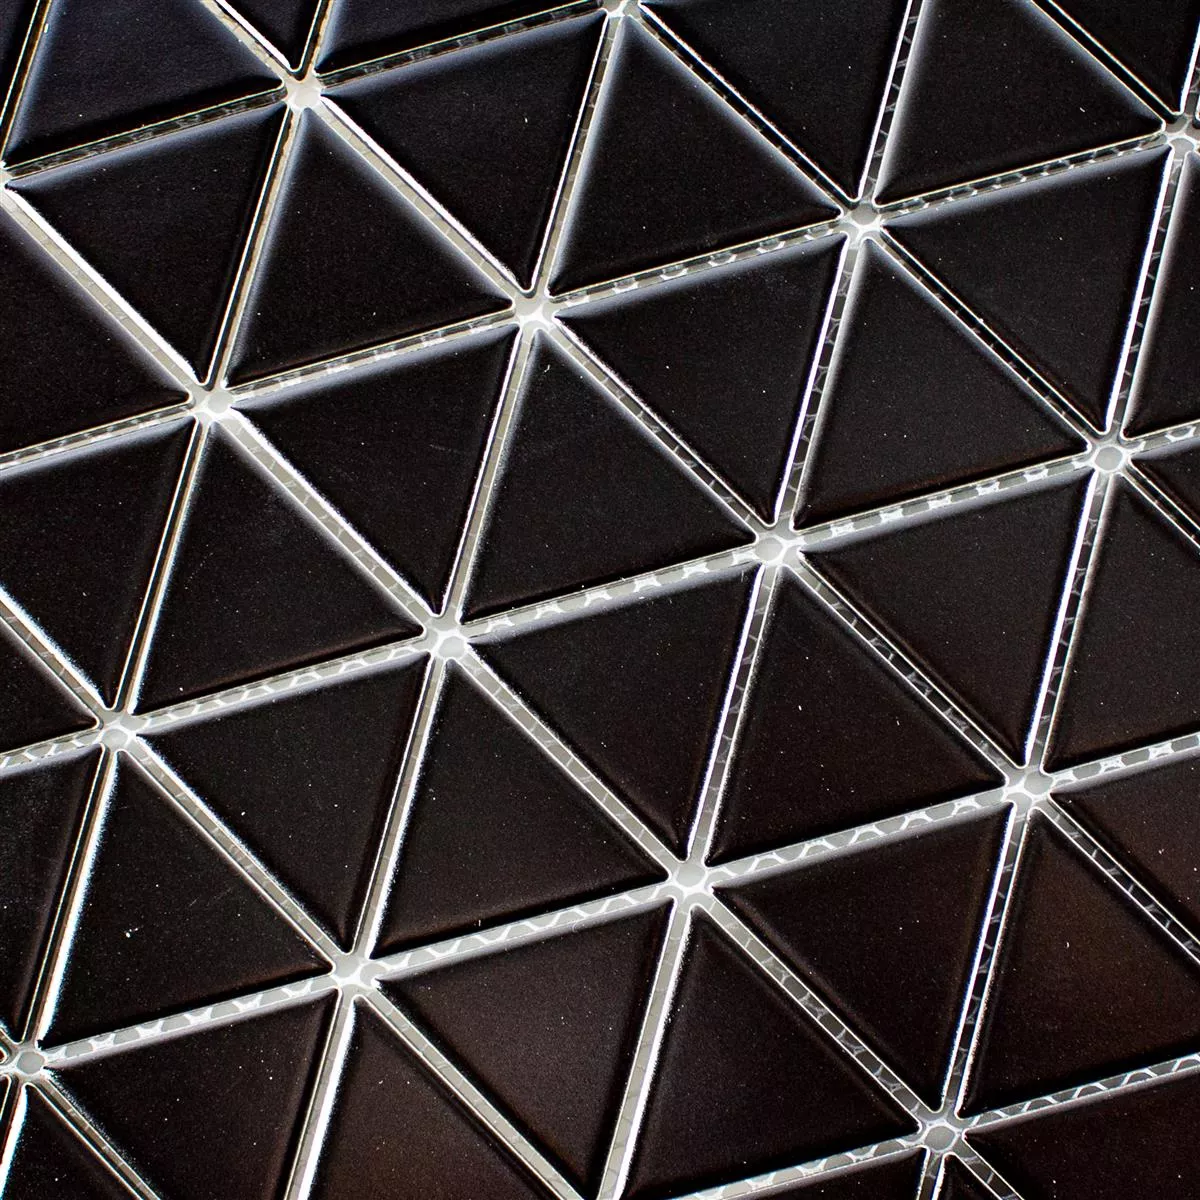 Muster von Keramik Mosaik Fliesen Arvada Dreieck Schwarz Matt